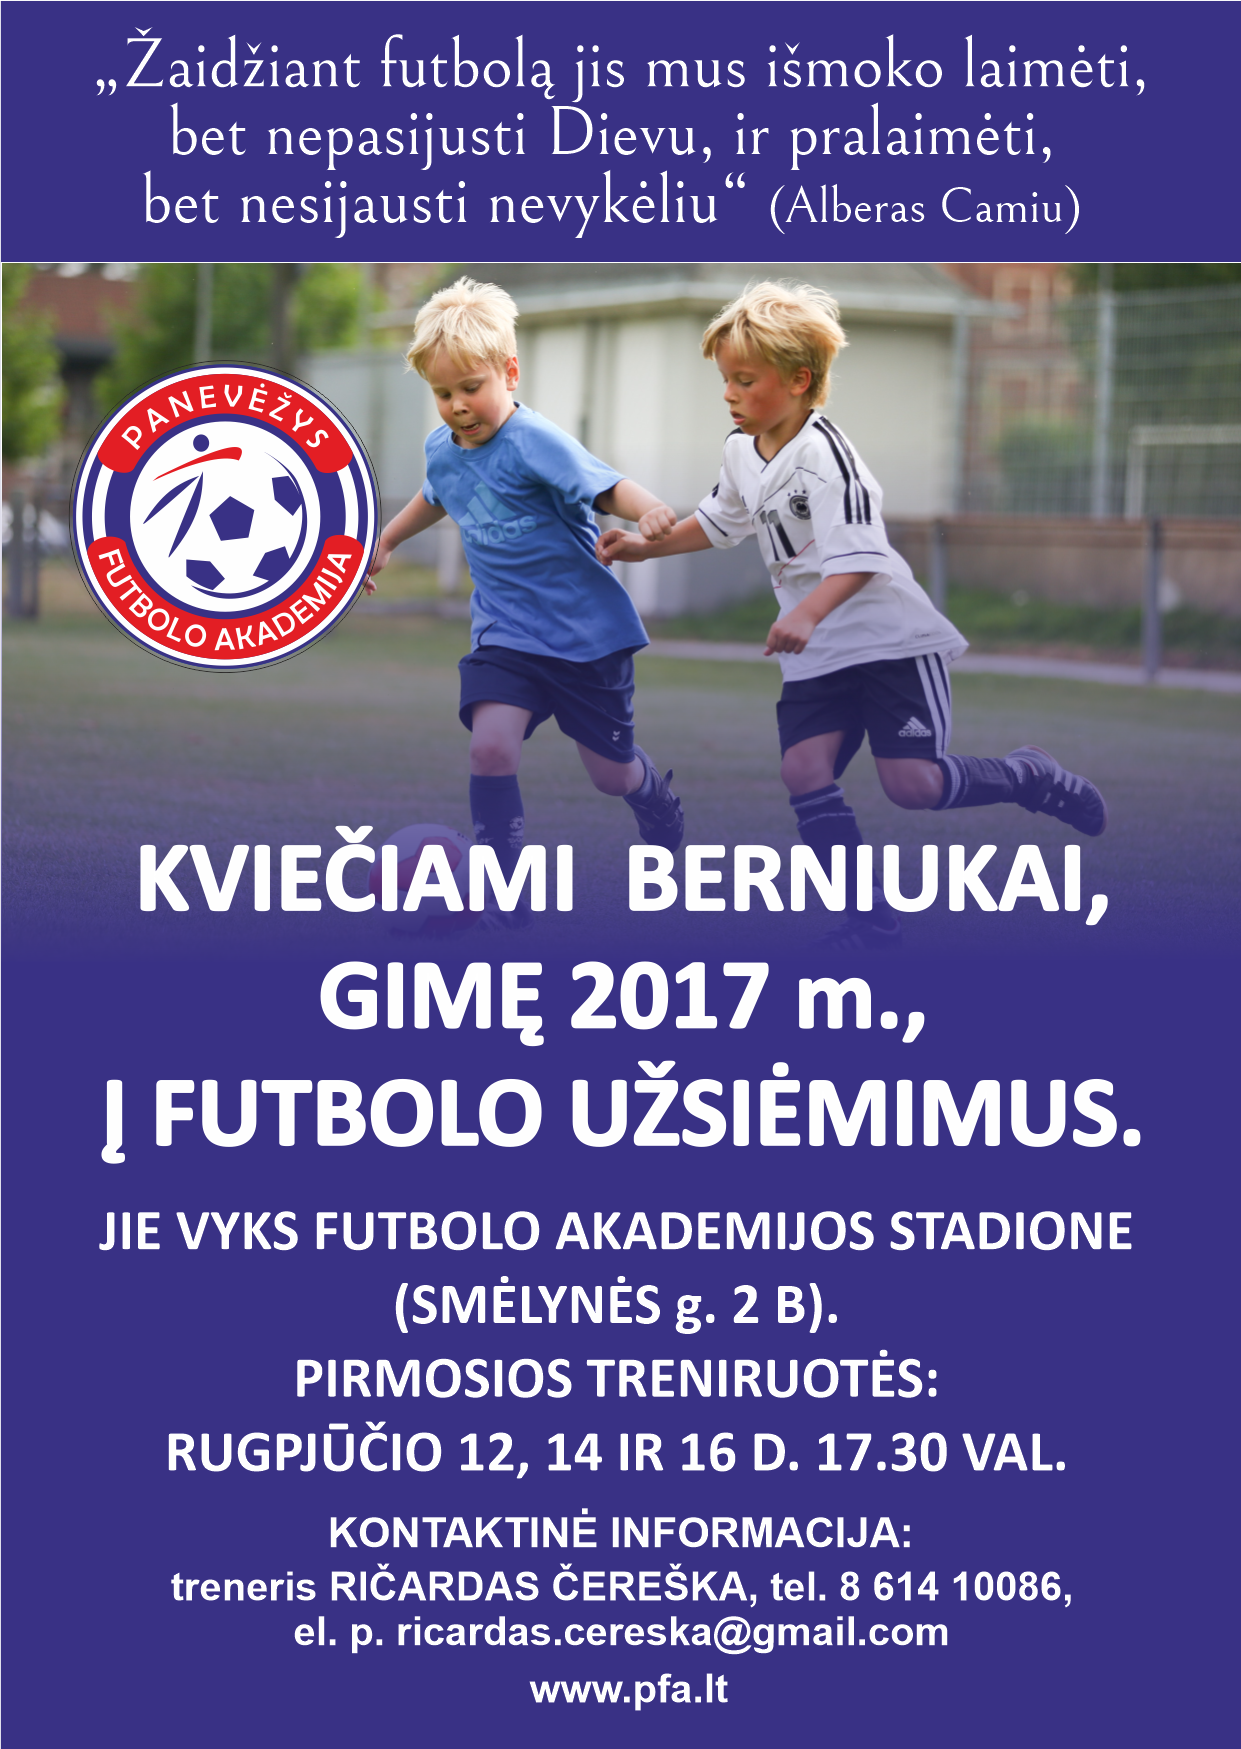 Futbolo akademija „Panevėžys” kviečia prisijungtiį futbolo šeimą !!!